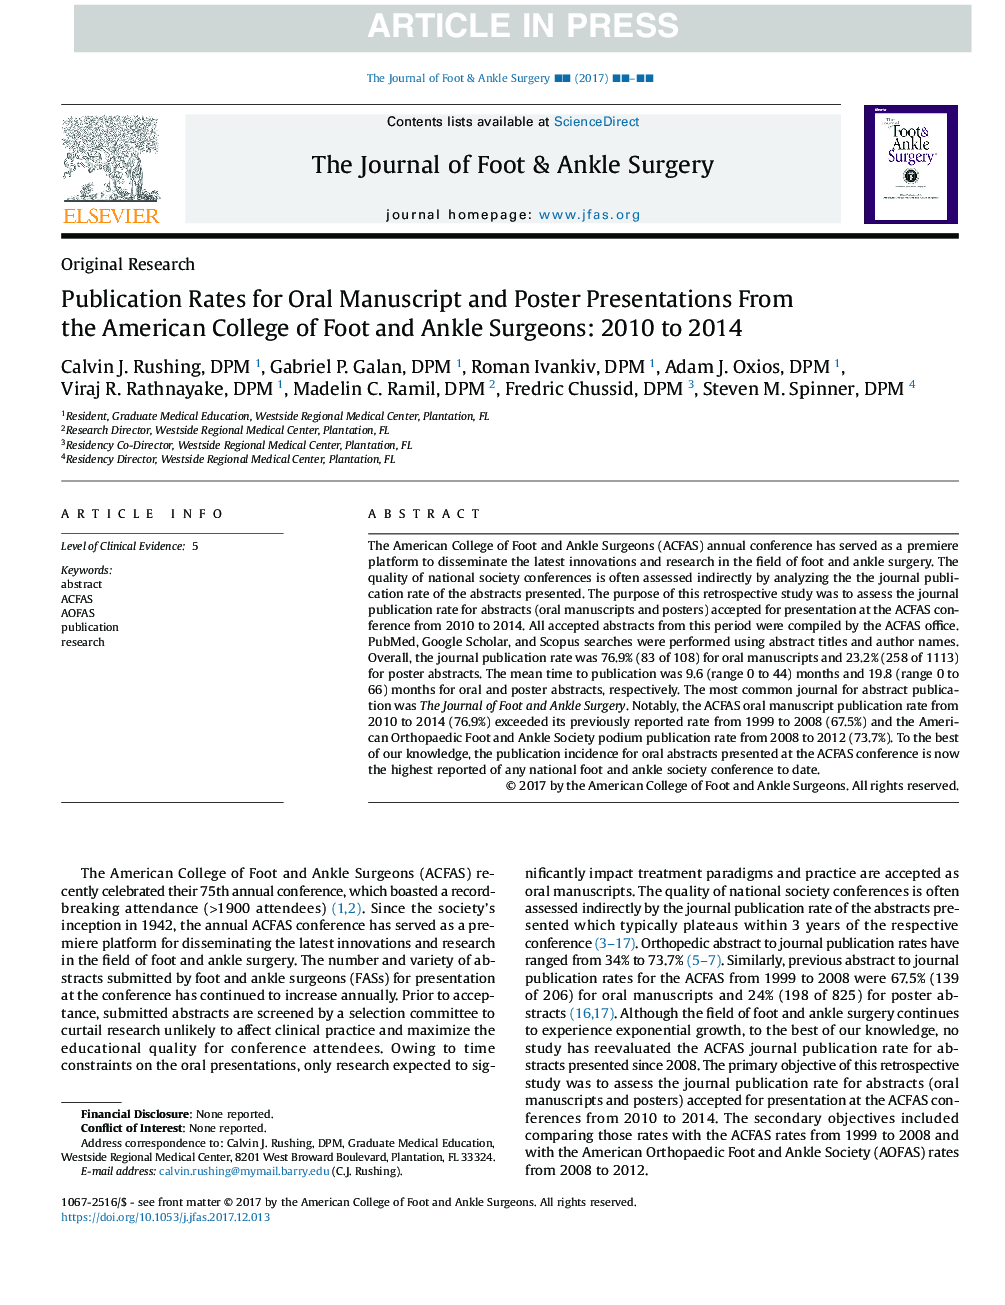 نرخ انتشار برای دست نوشته ها و پوسترهای ارائه شده از کالج آمریکایی جراحان پا و مچ پا: 2010 تا 2014 